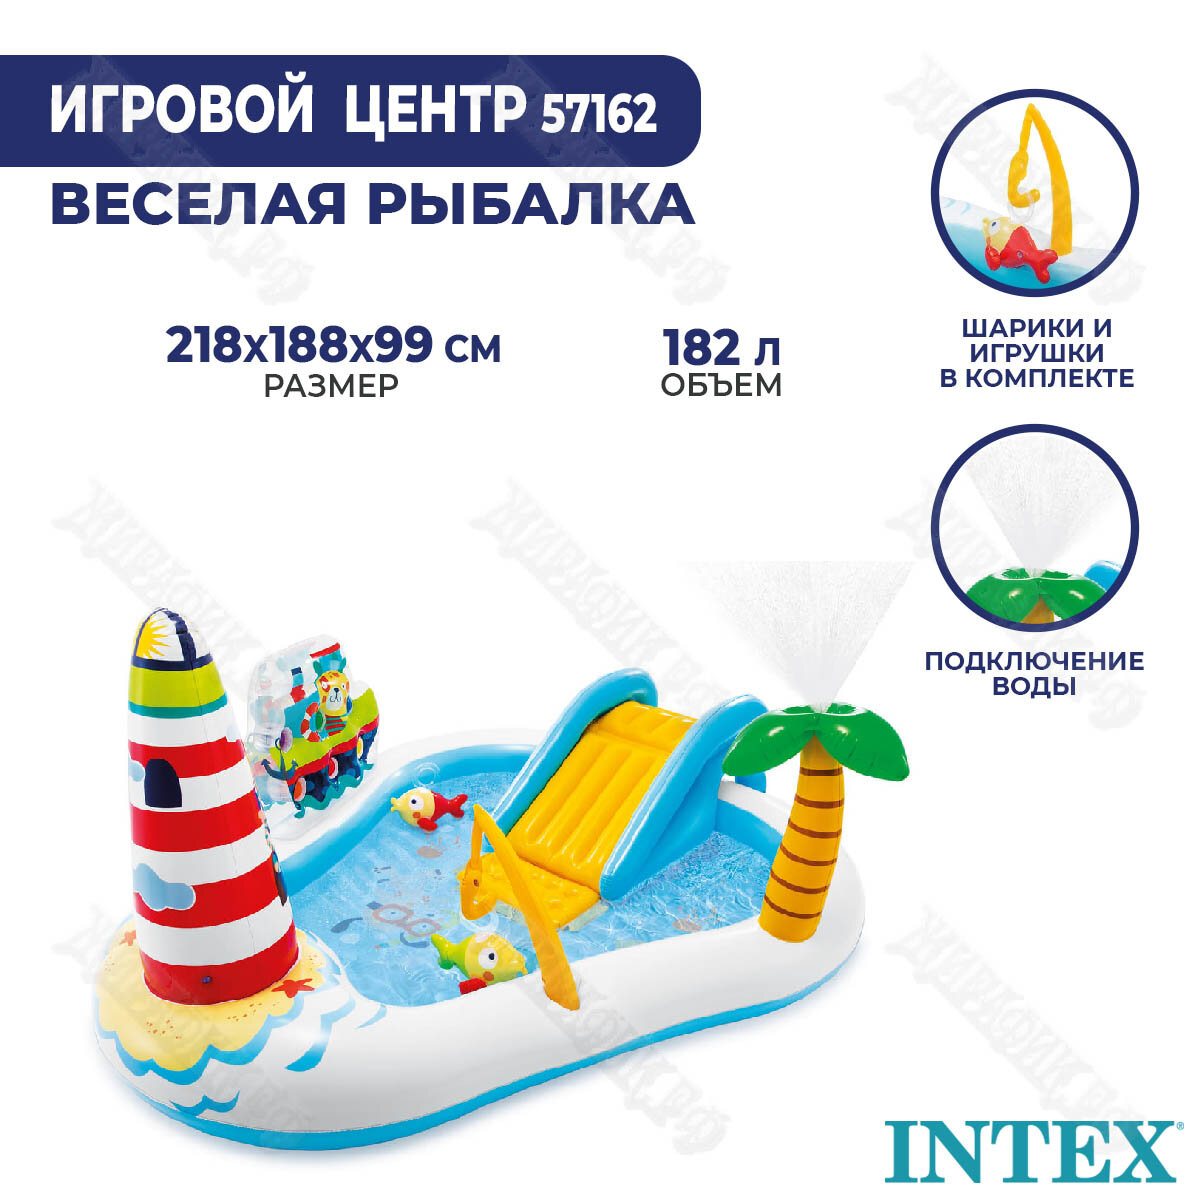 Детский надувной бассейн Intex 57162 Веселая рыбалка, белый с голубым (21230) - фото №6